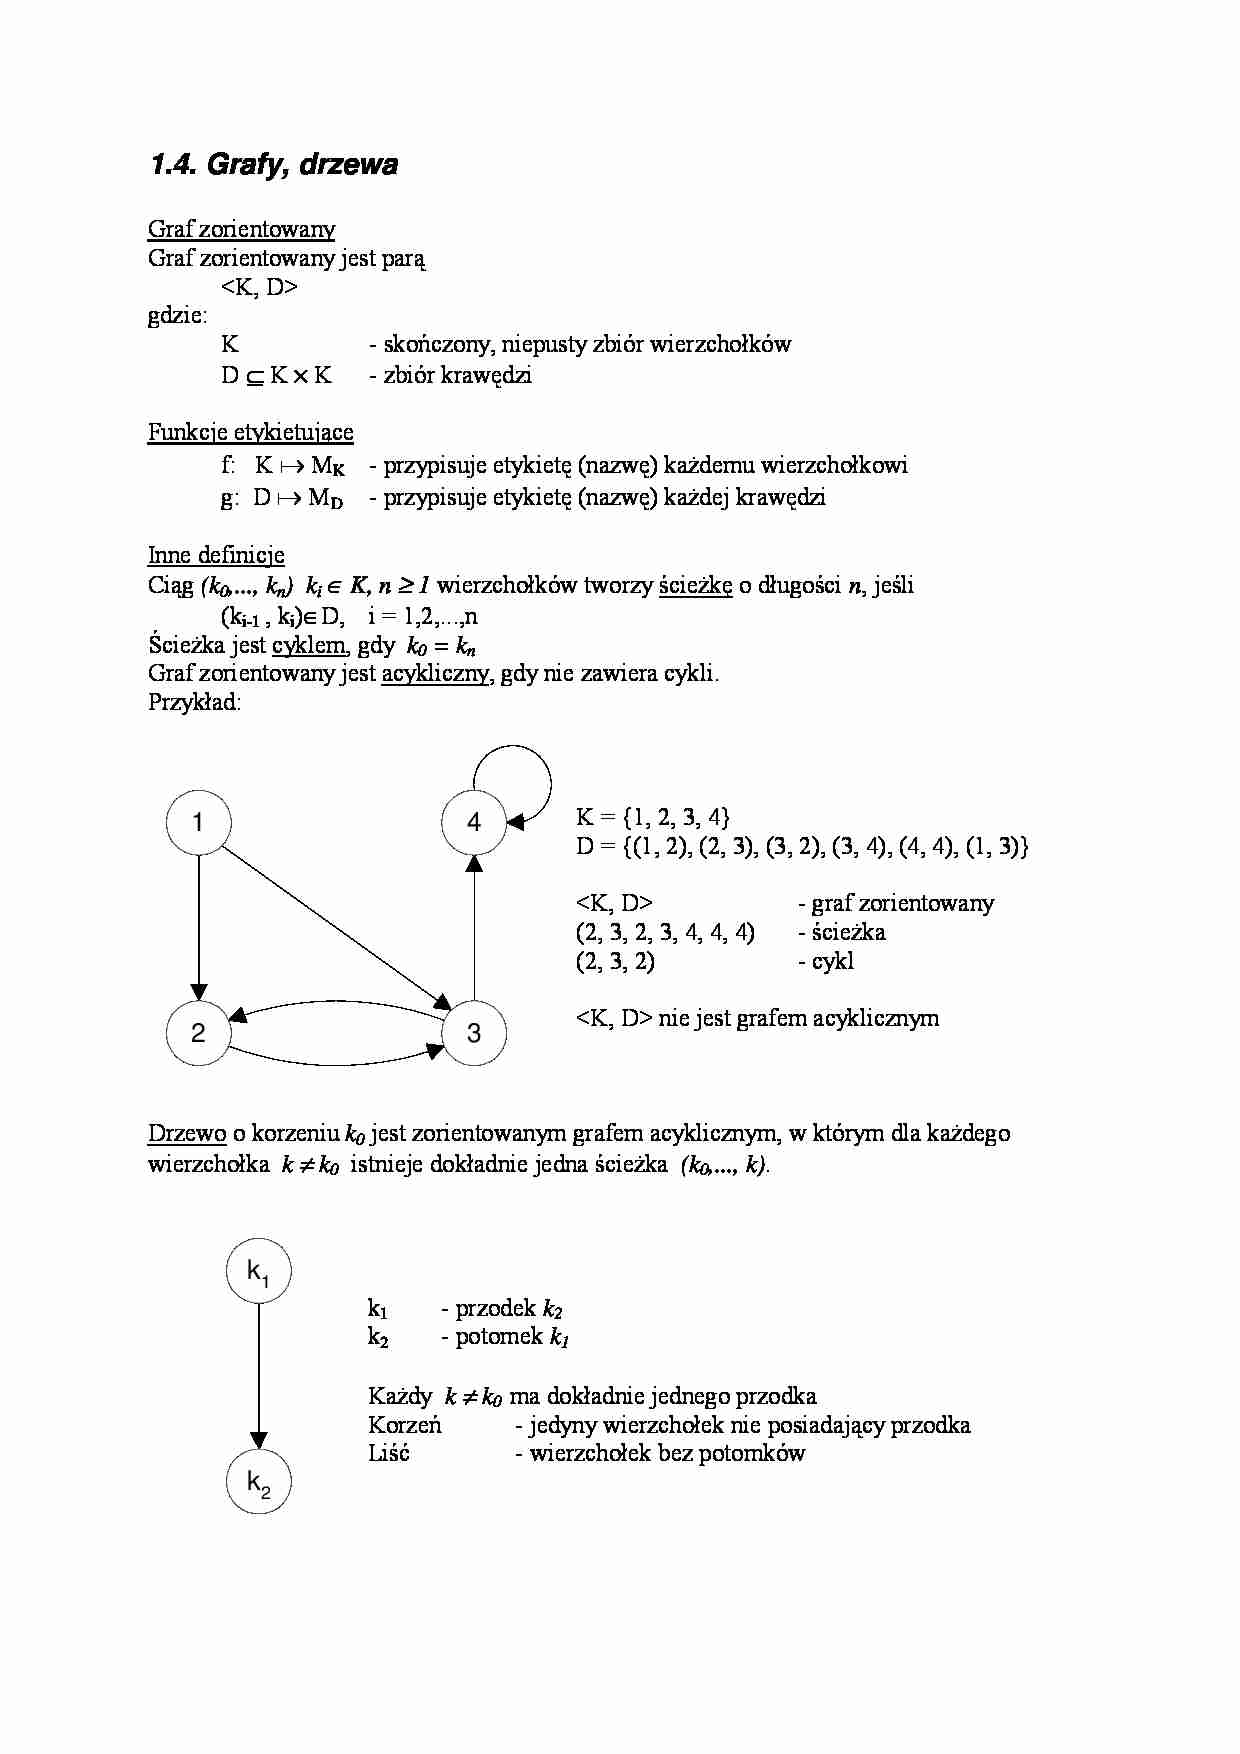 Grafy, drzewa - wykład - strona 1